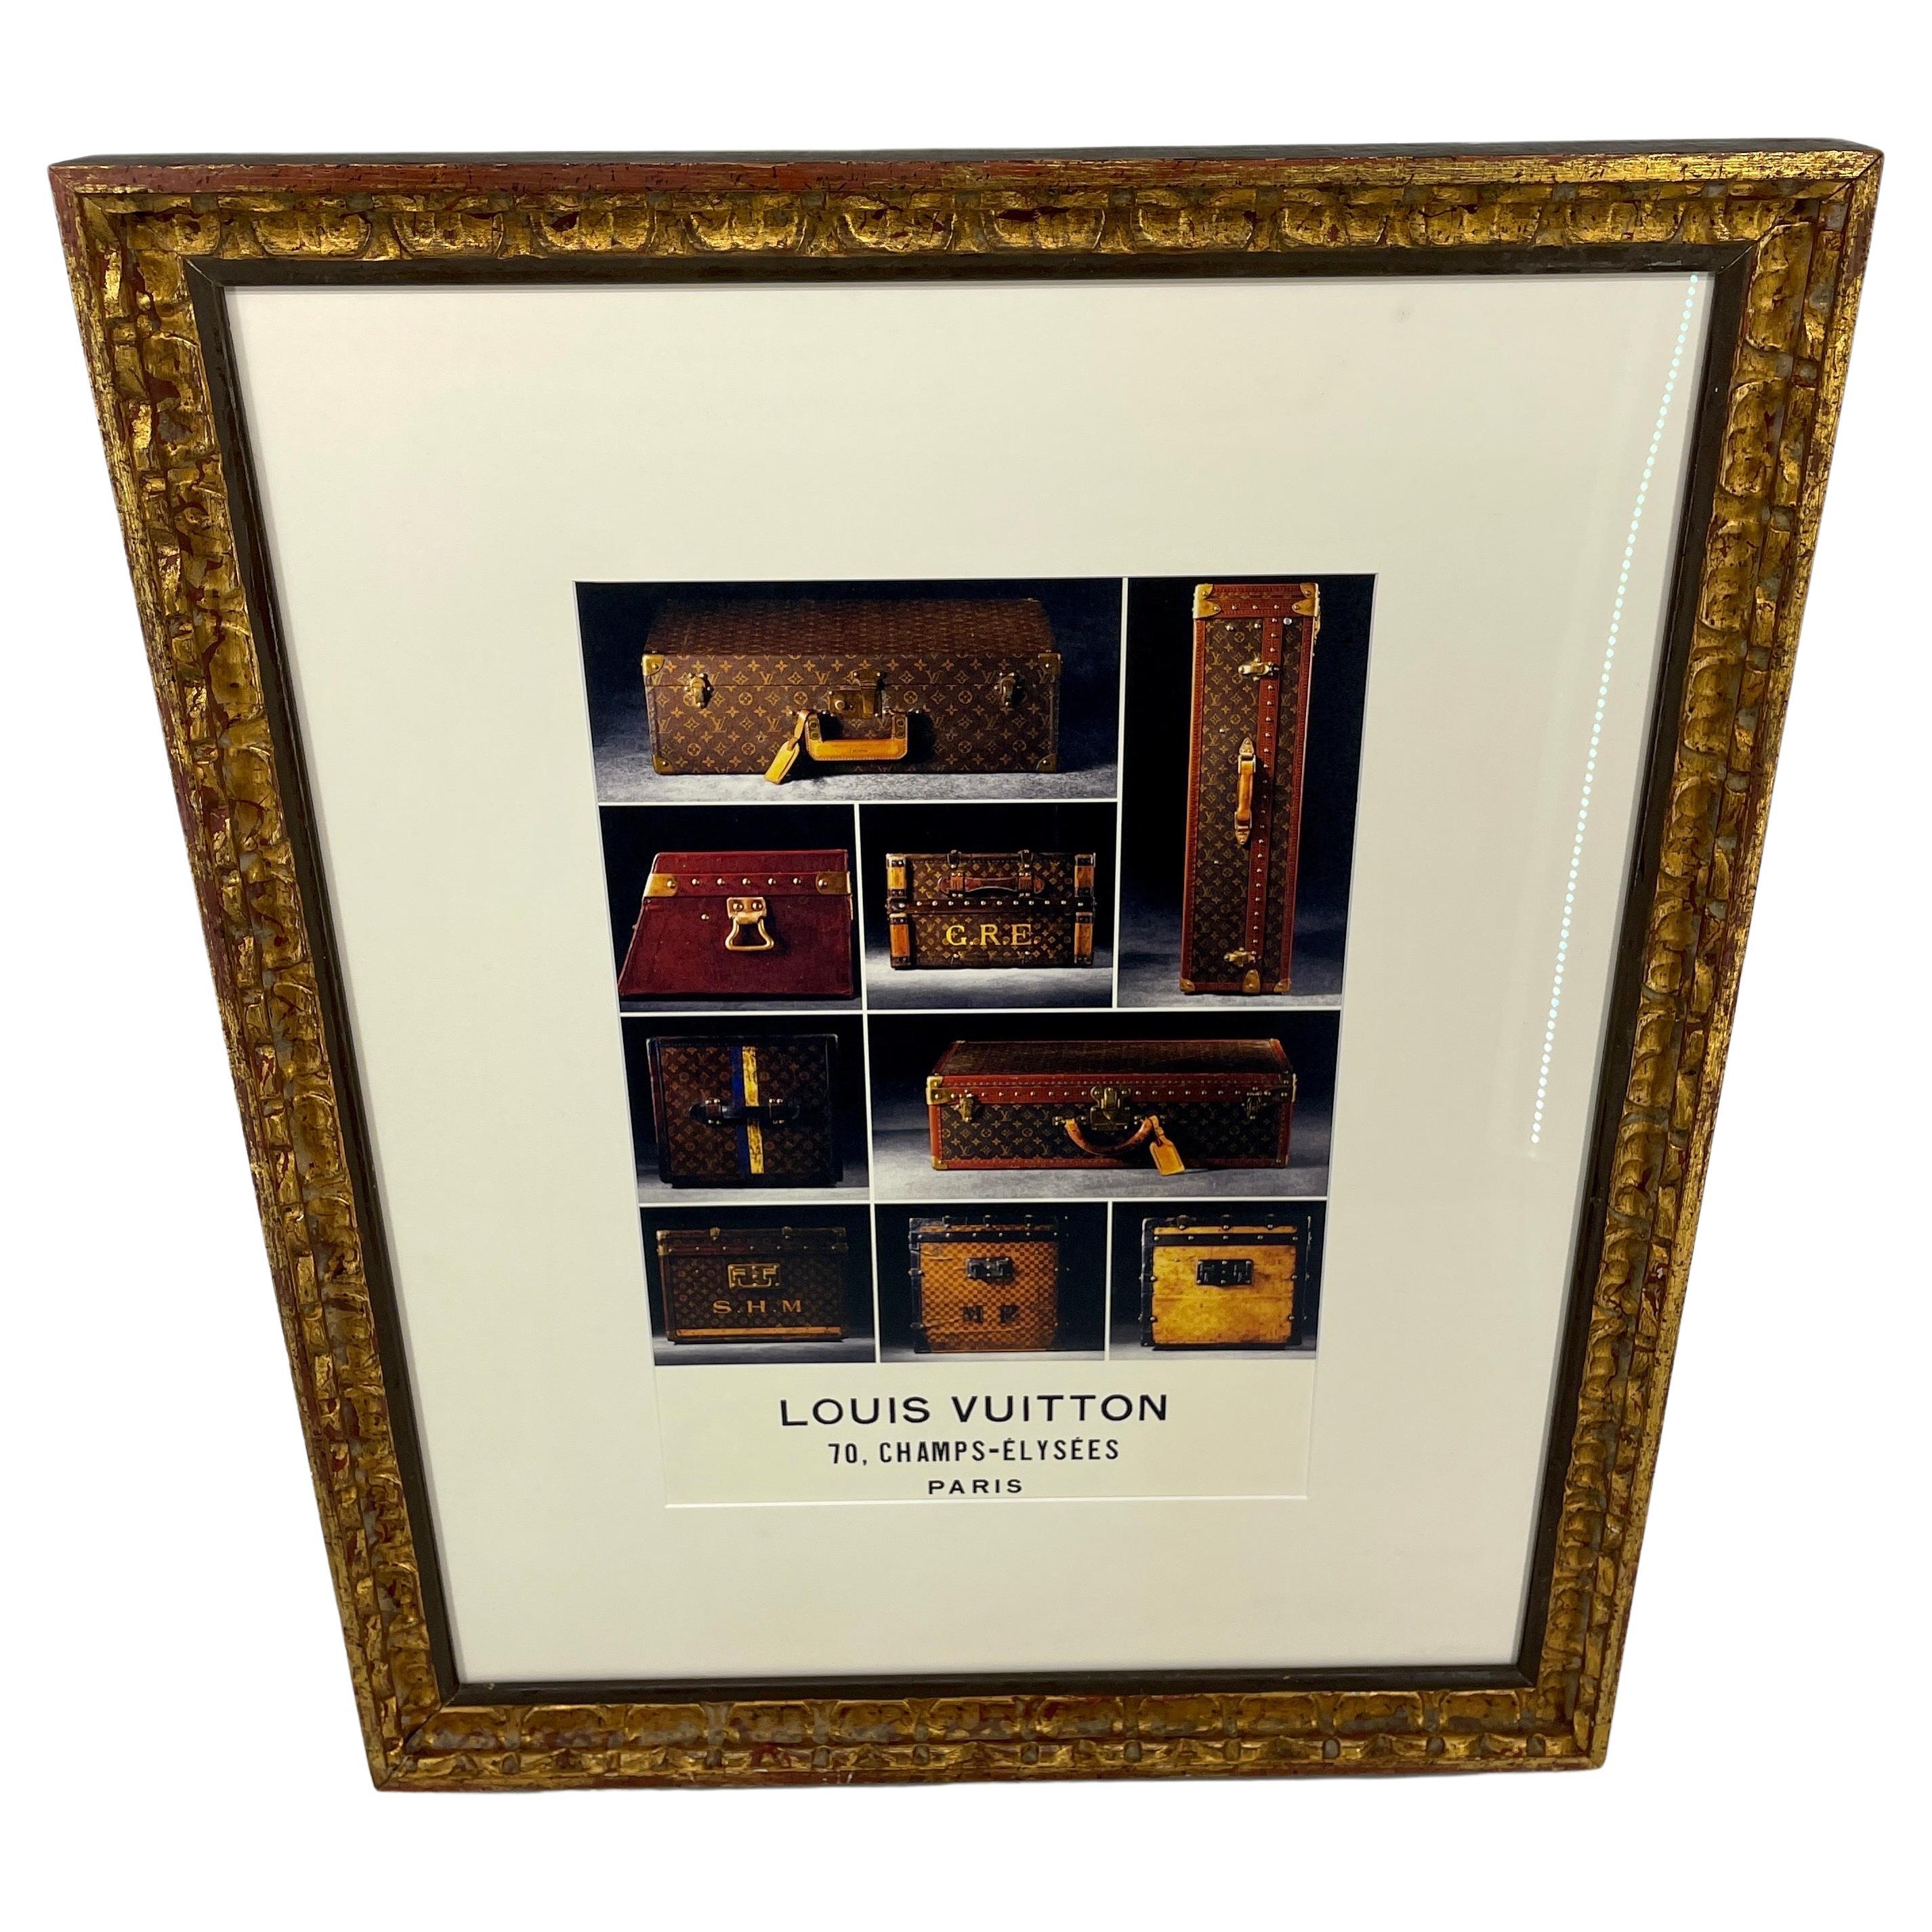 Art of Vintage Trunks and Suitcases in Vintage Gilt Frame, Louis Vuitton

Merveilleuse estampe Louis Vuitton de Paris, France, encadrée dans un cadre vintage en bois doré. Cette œuvre d'art unique, trouvée dans les rues de Paris, représente les